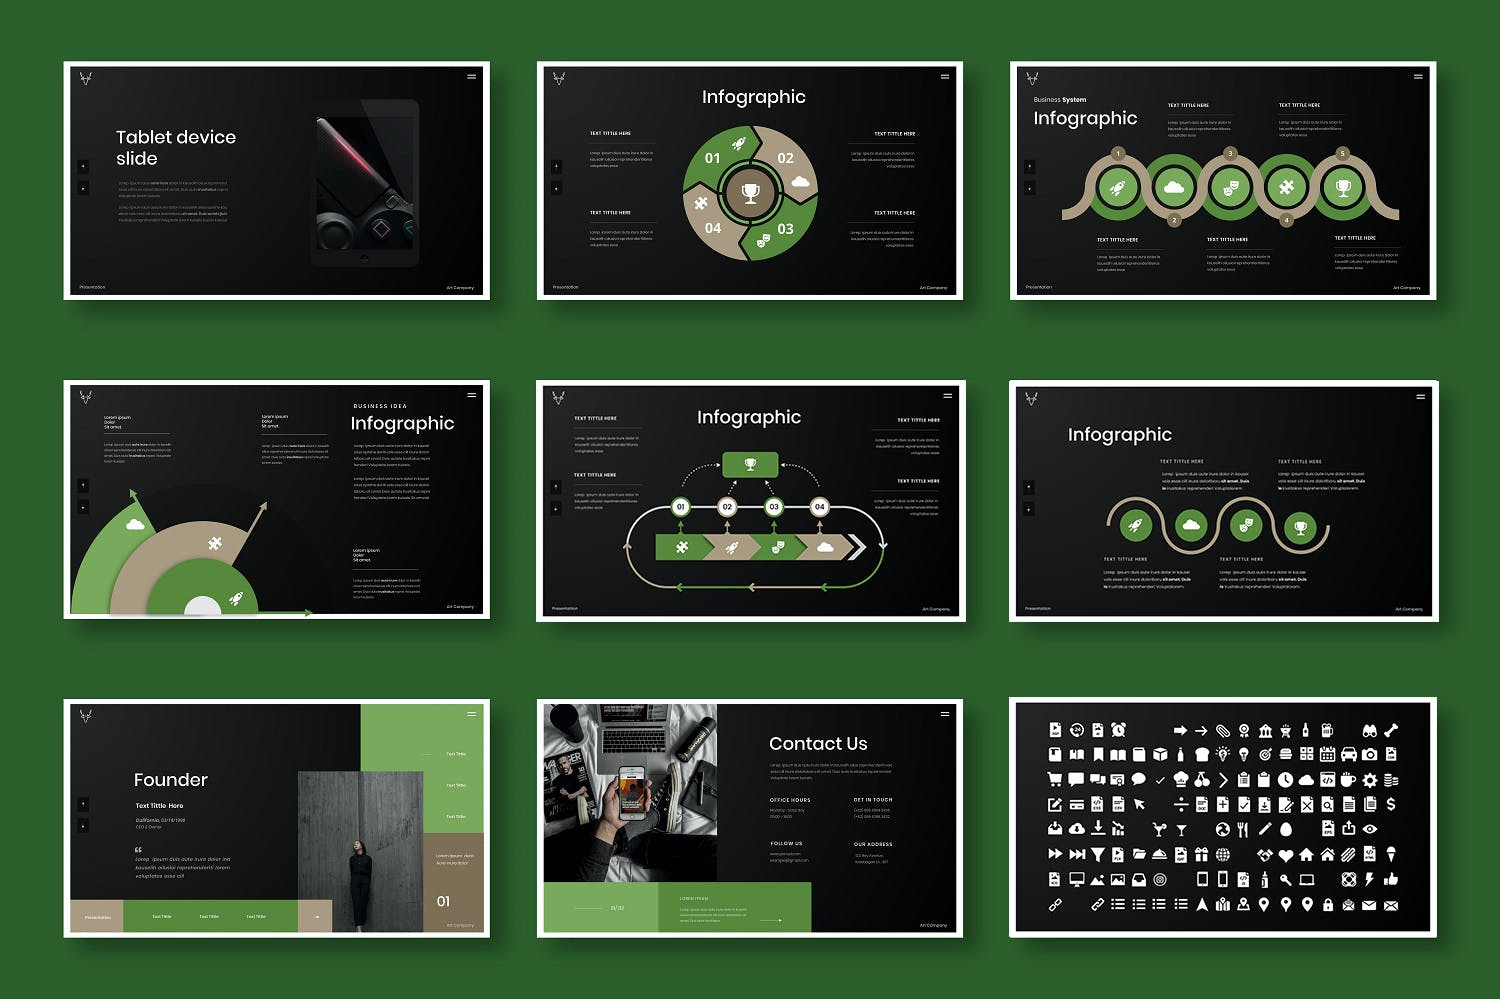 3078 绿色优雅商业主题摄影器材演示Keynote模板 Pansel – Business Keynote Template